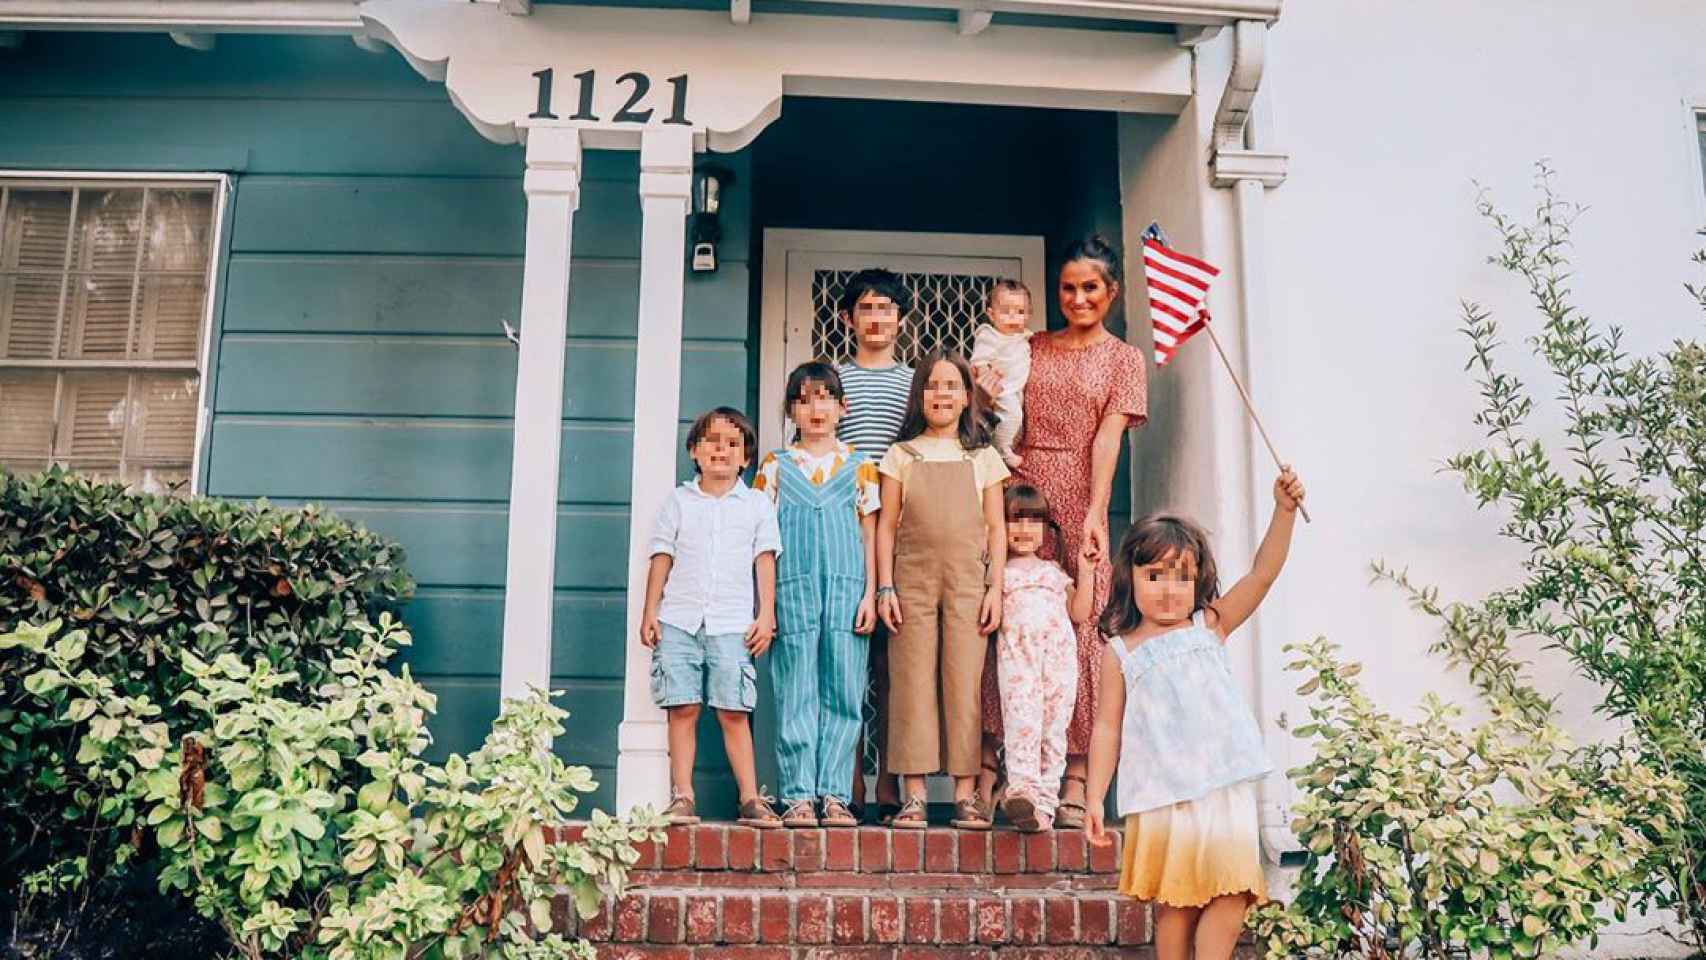 Verdeliss junto a sus siete hijos en la puerta de su casita alquilada en California.